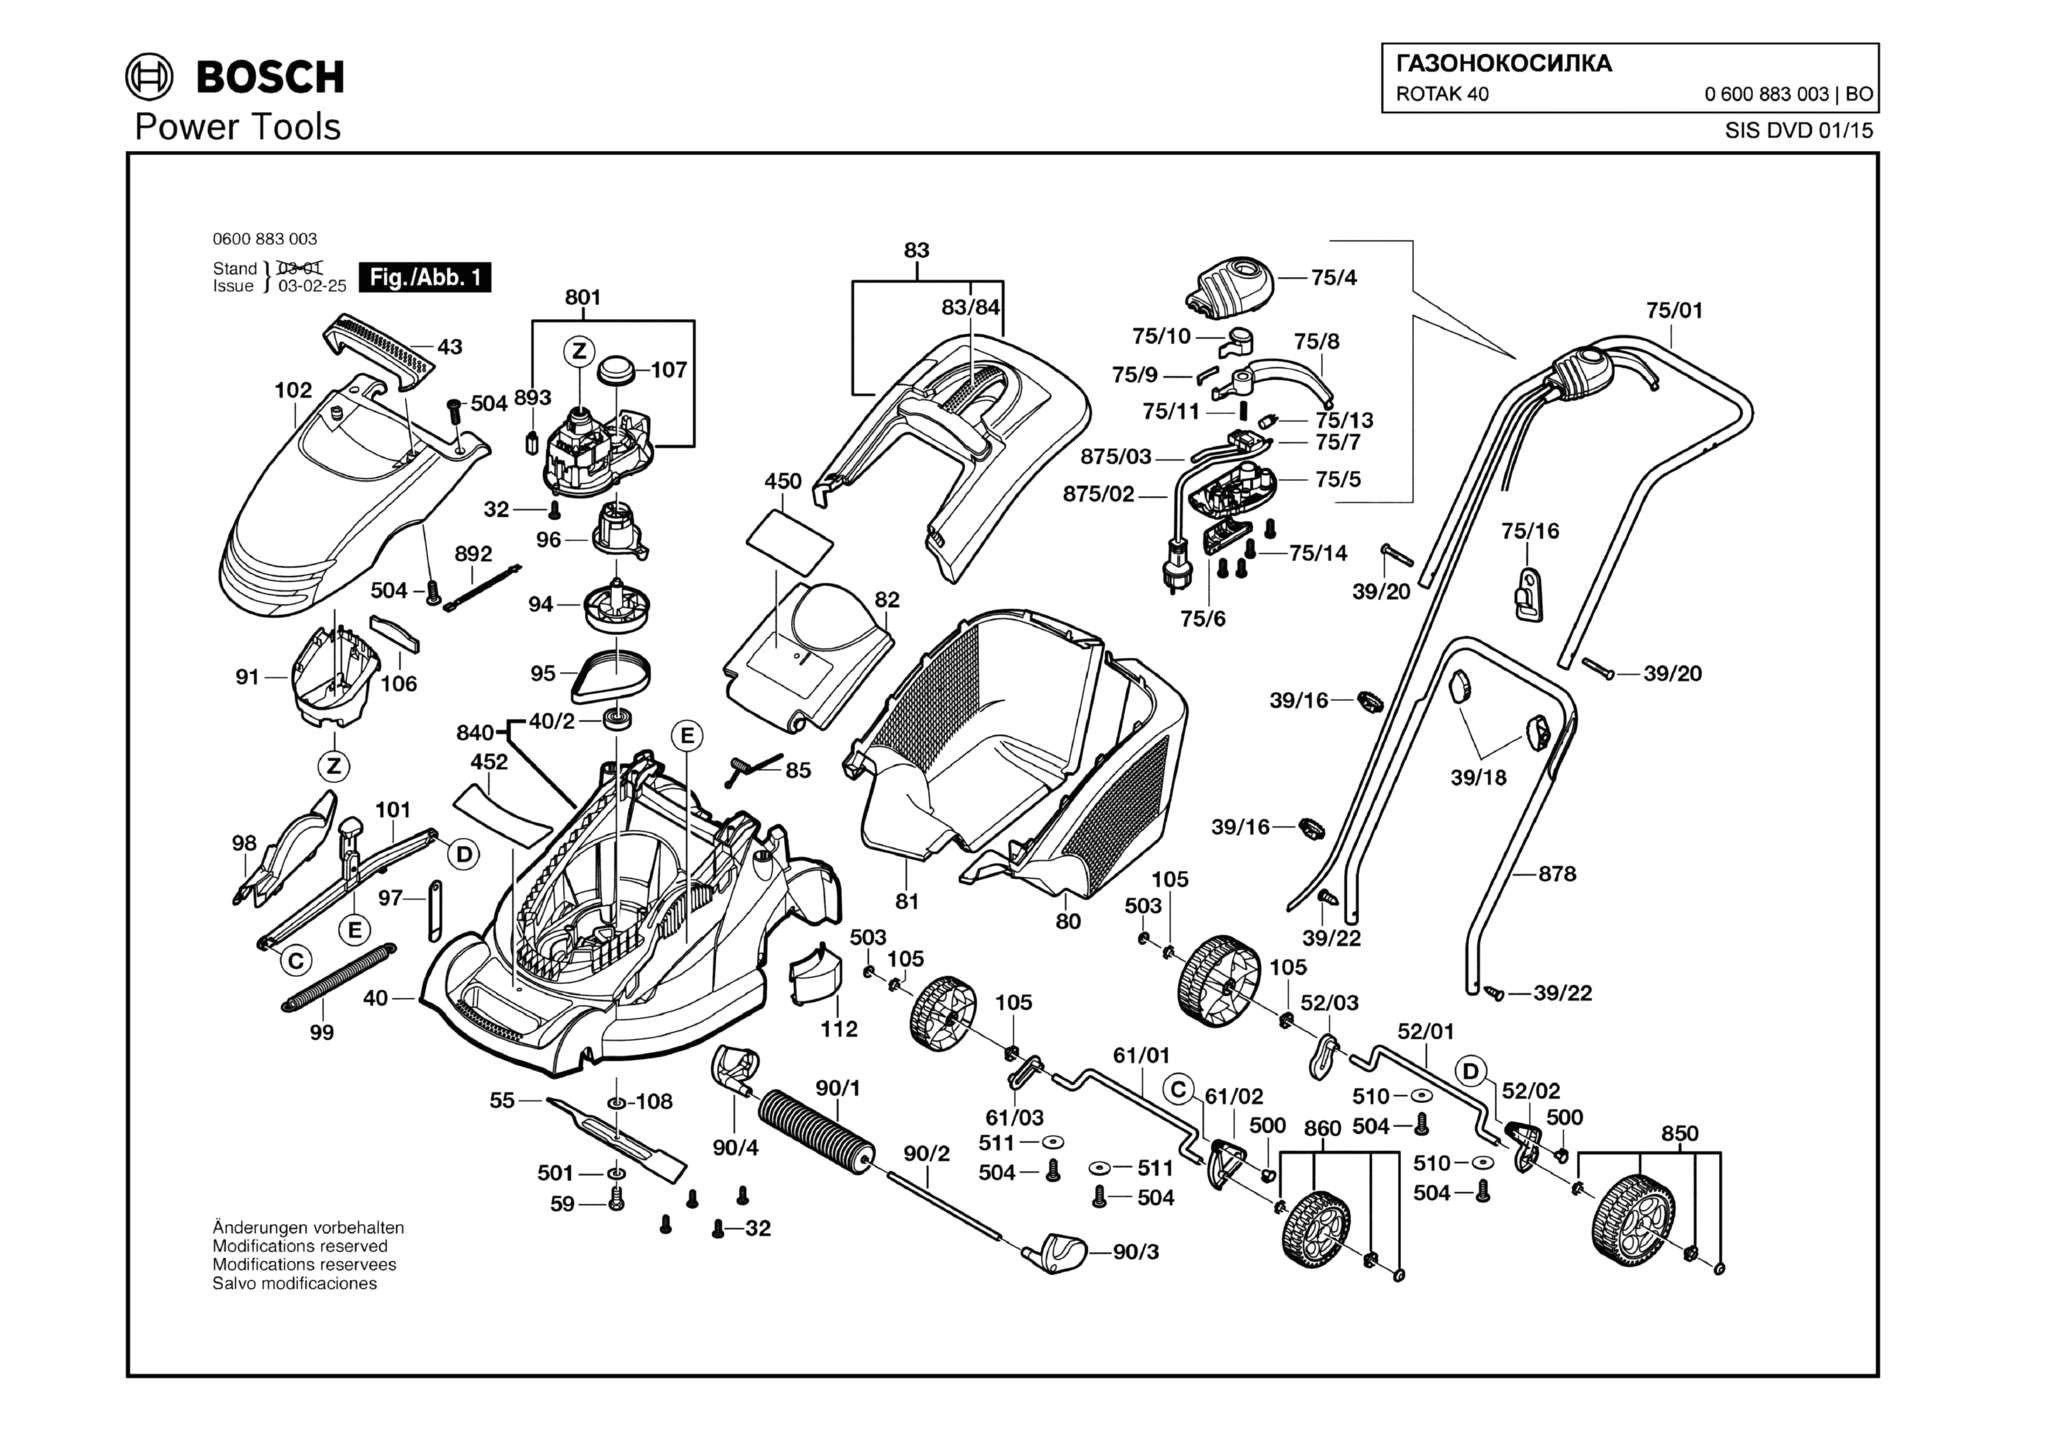 Запчасти, схема и деталировка Bosch ROTAK 40 (ТИП 0600883003)